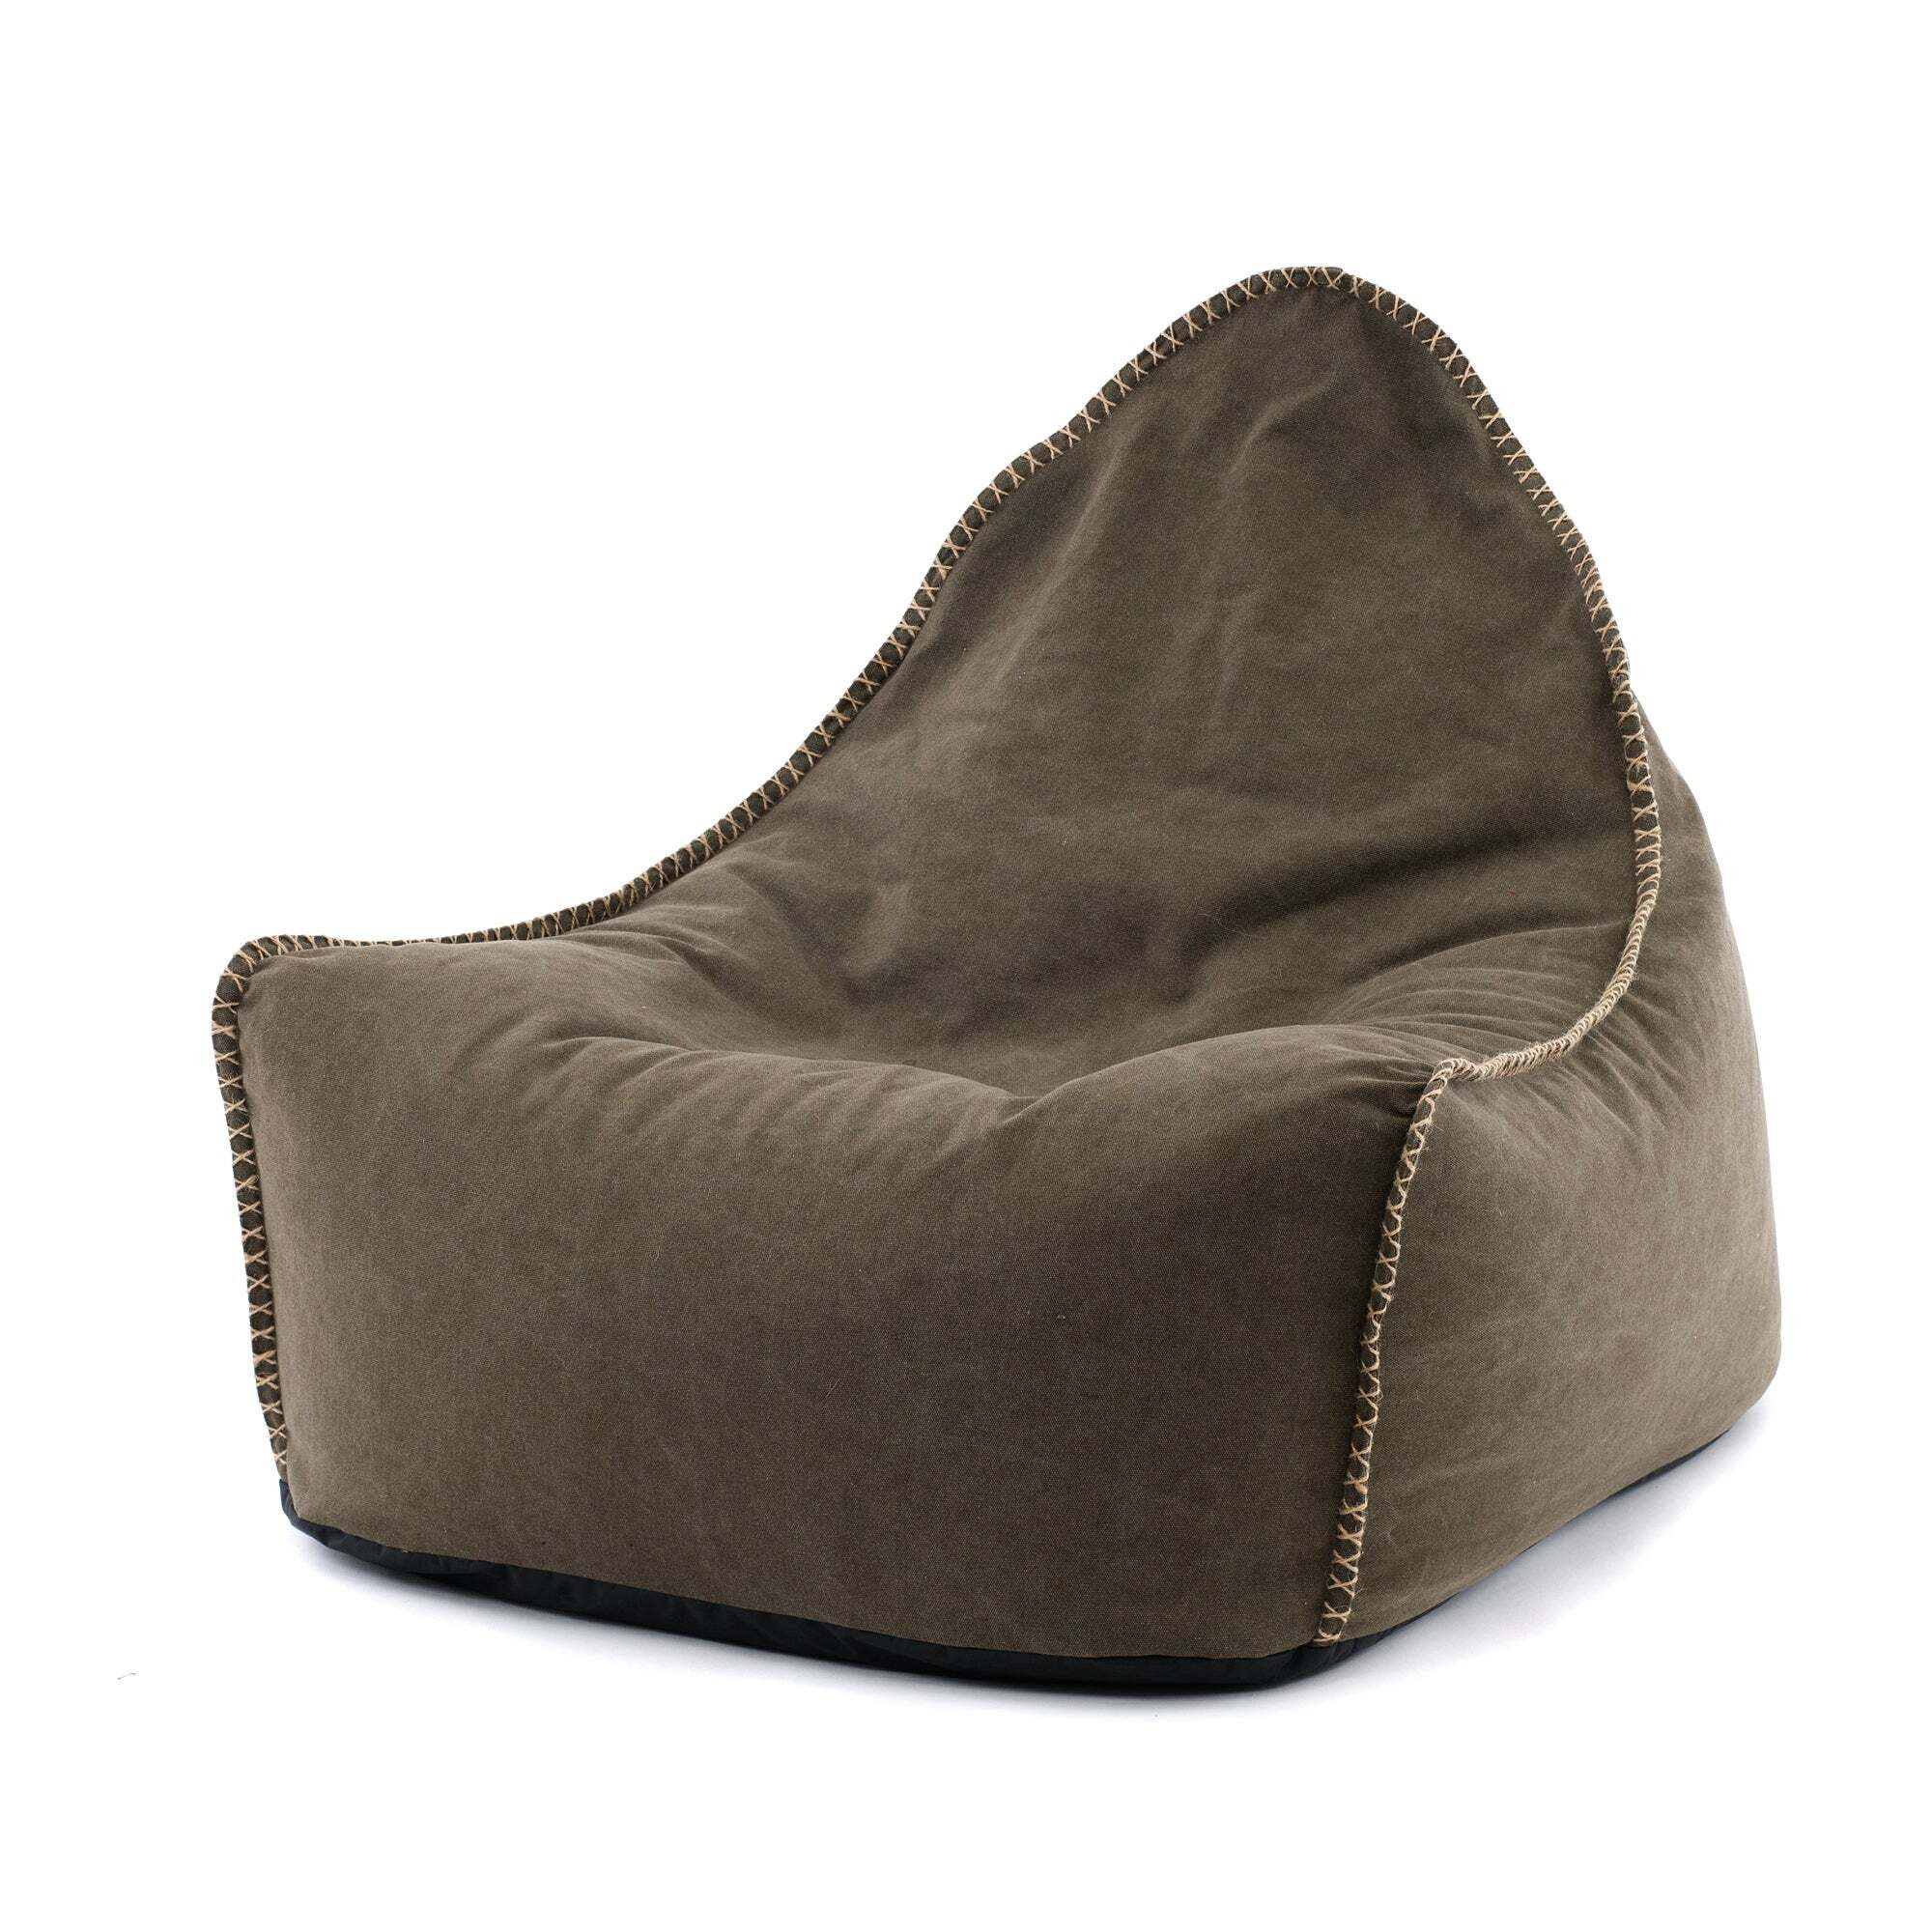 Khaki Canvas Bean Bag Chair Brown